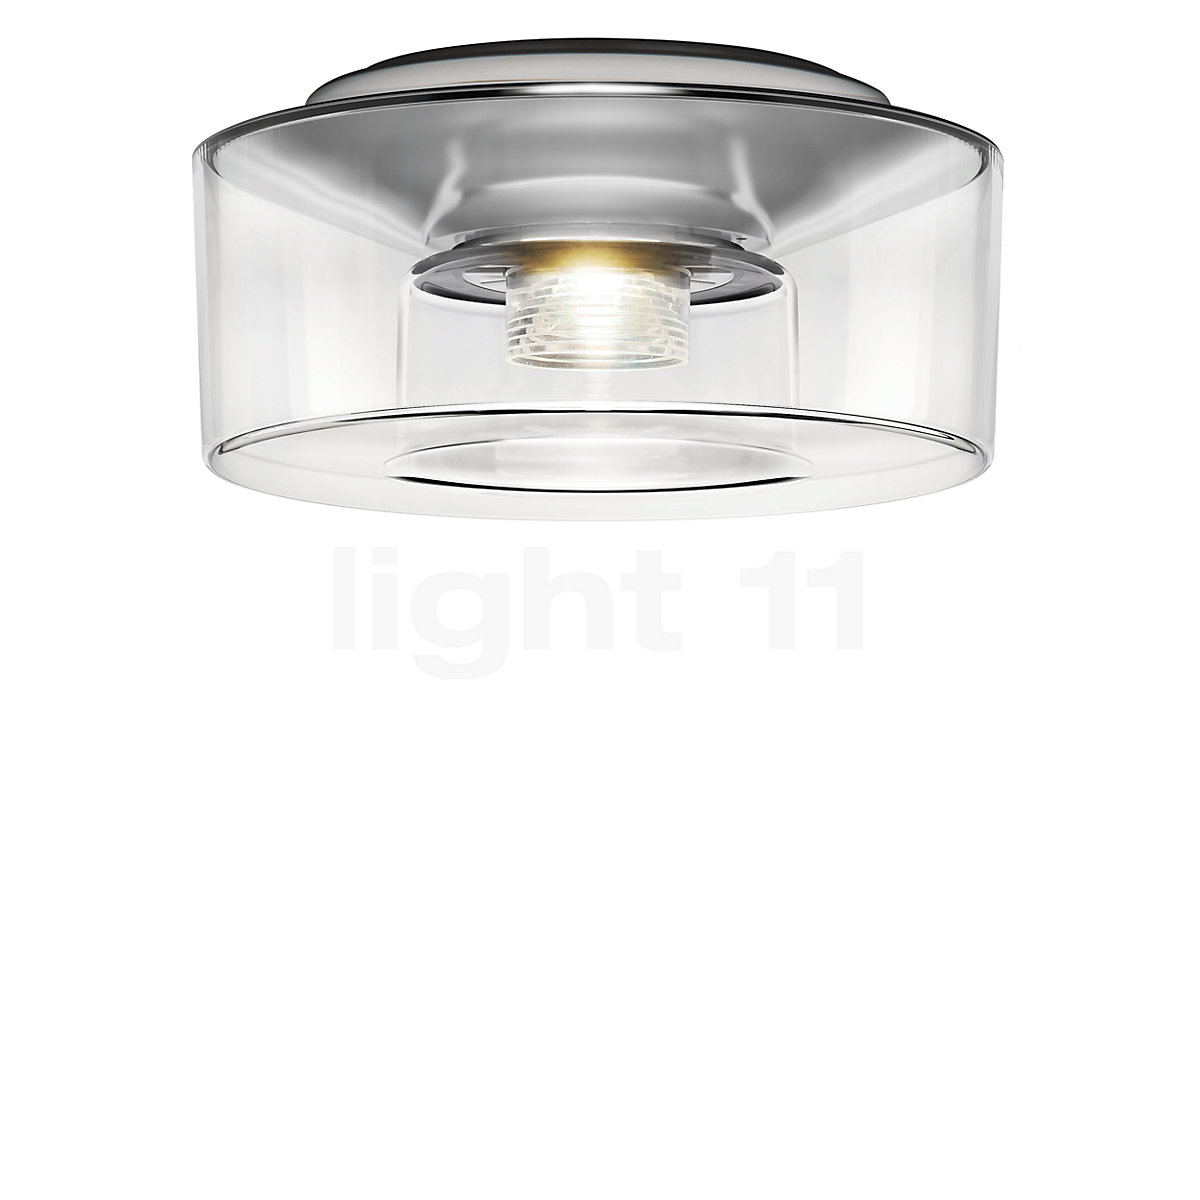 Buy Serien Lighting Curling Ceiling Light LED Acrylic Glass